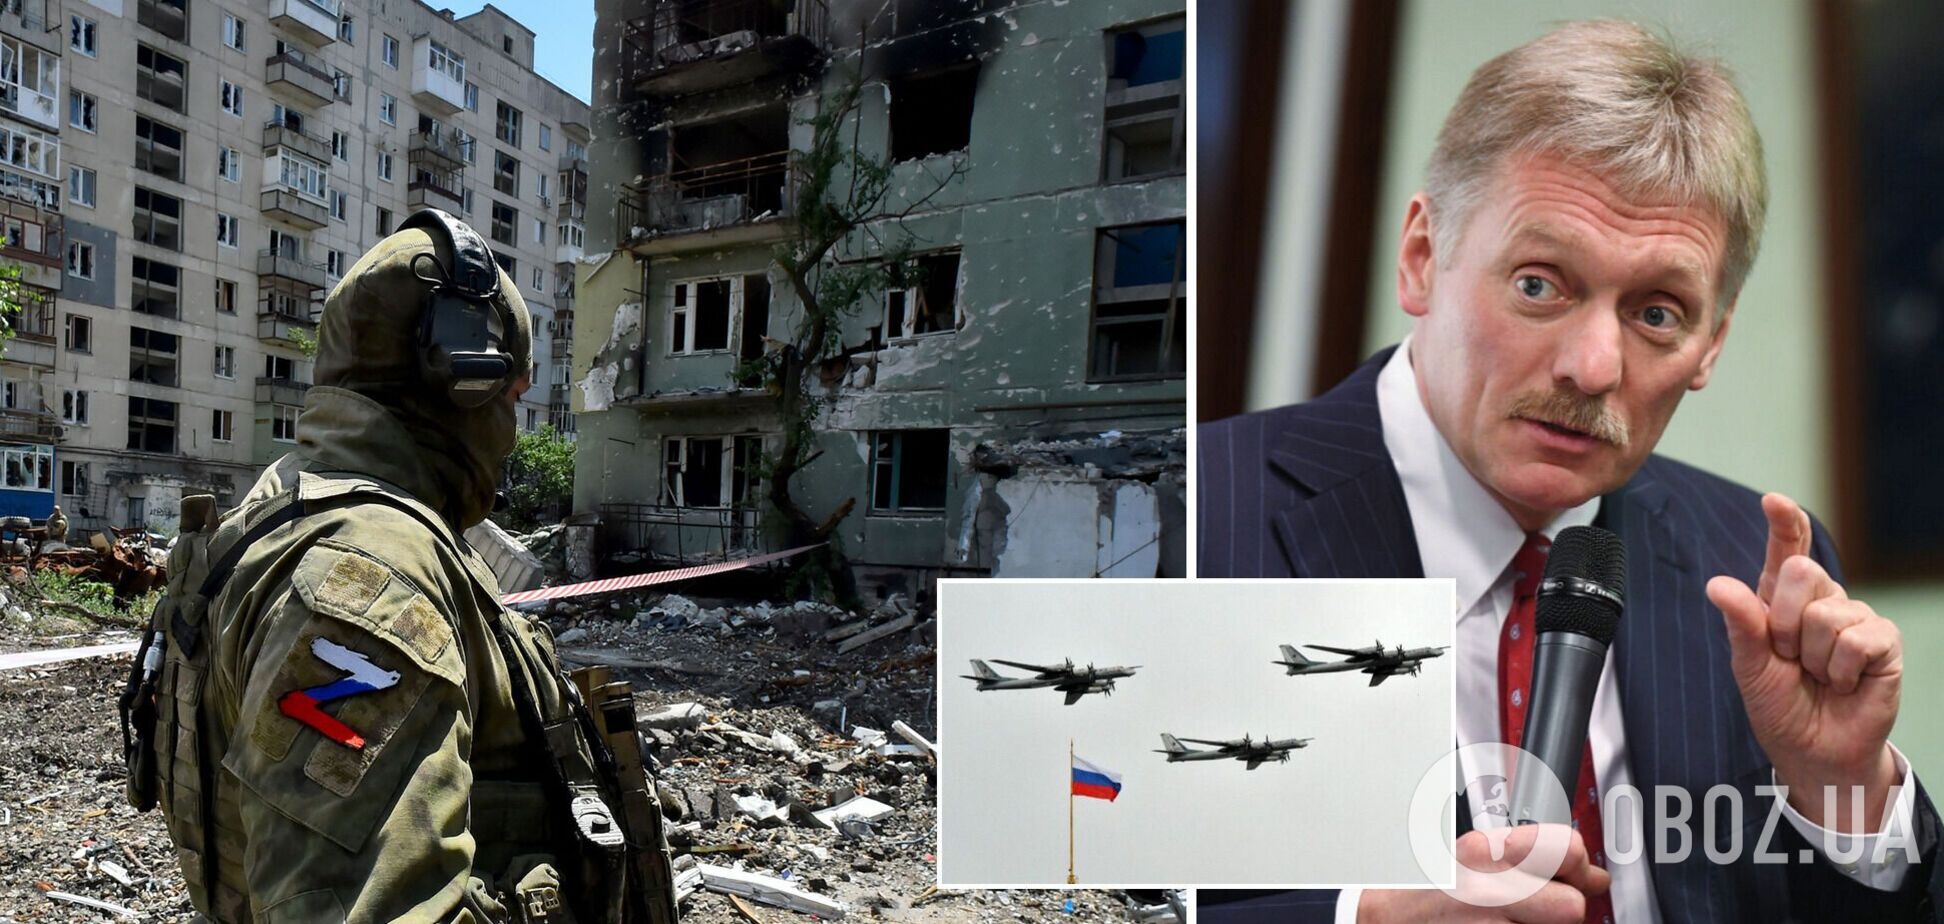 Пєсков заявив, що часових меж війни проти України немає, і цинічно збрехав про 'цілі'